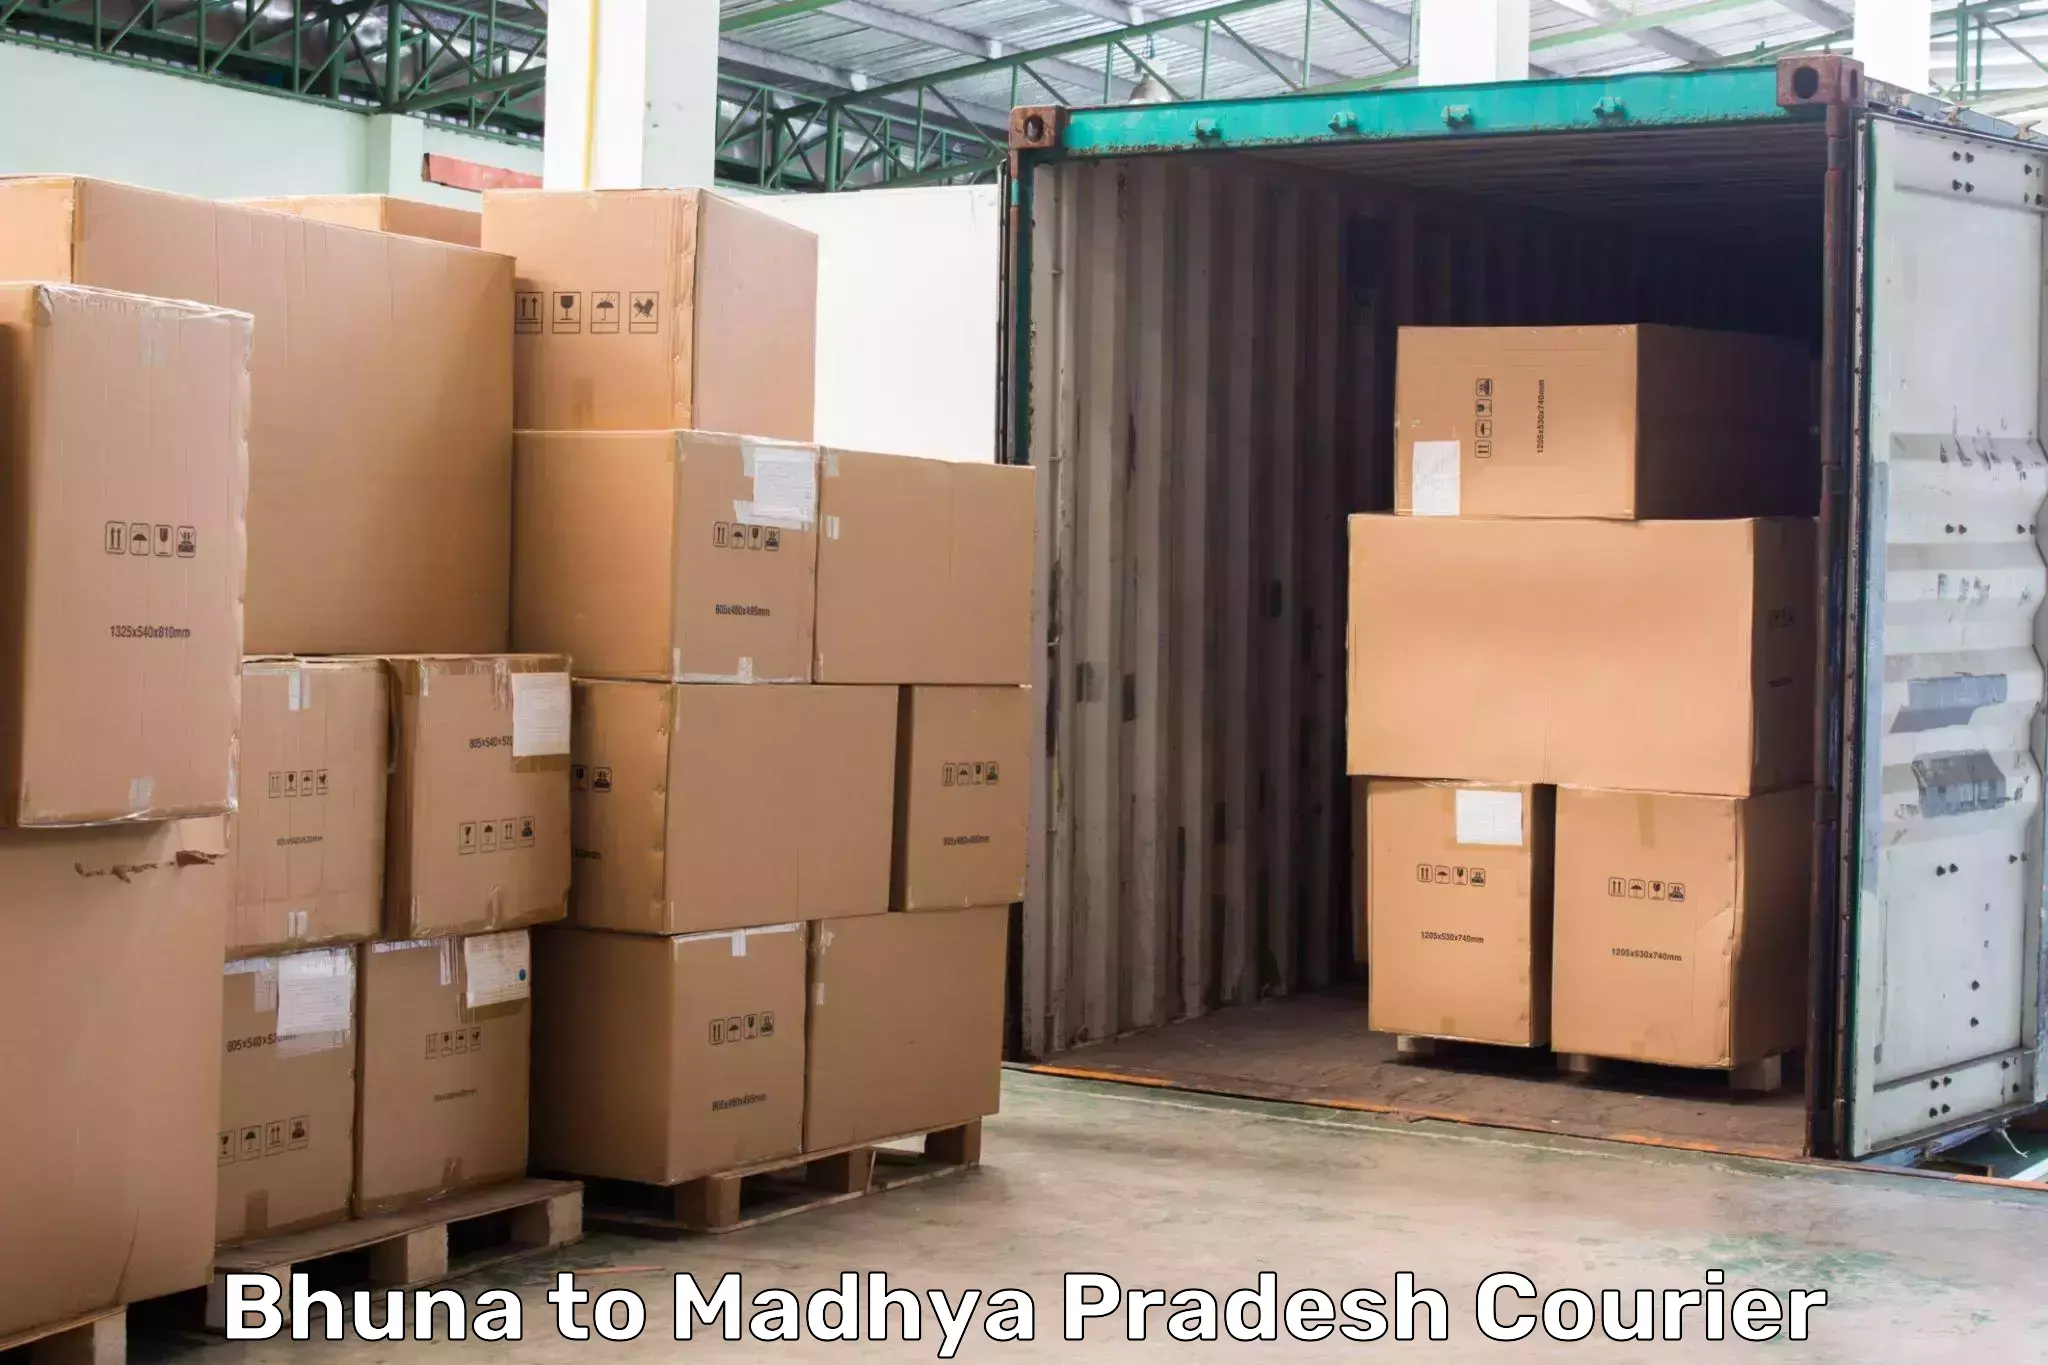 Digital courier platforms Bhuna to Mandla